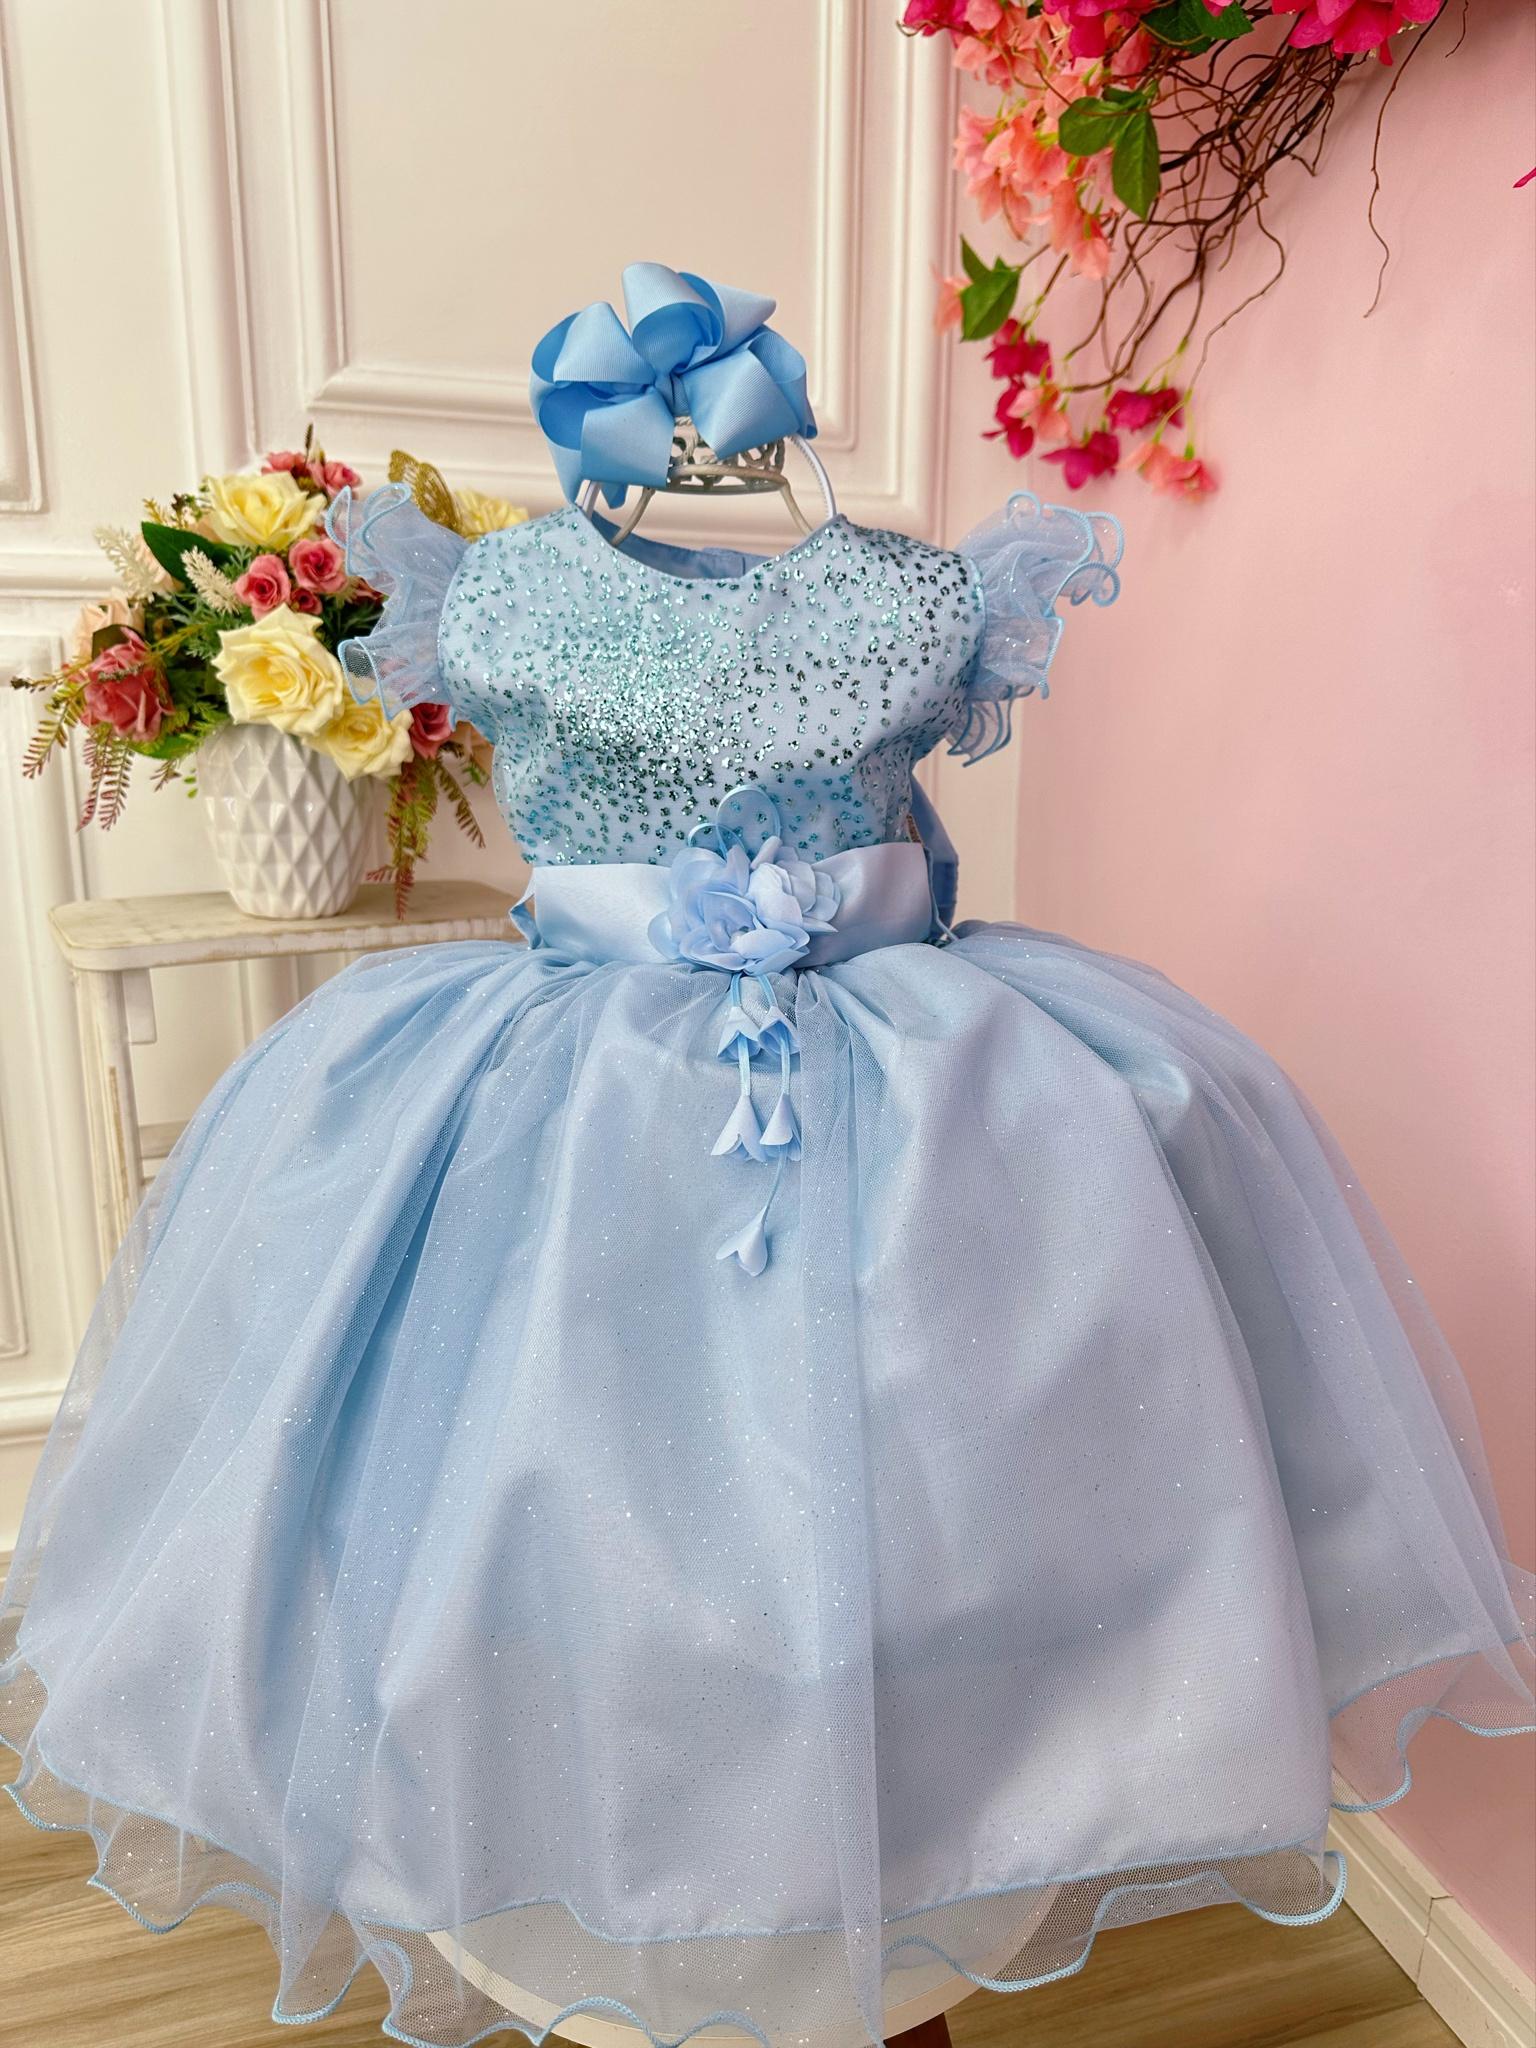 Vestido Infantil Azul Com Glitter e Broche de Flor Luxo